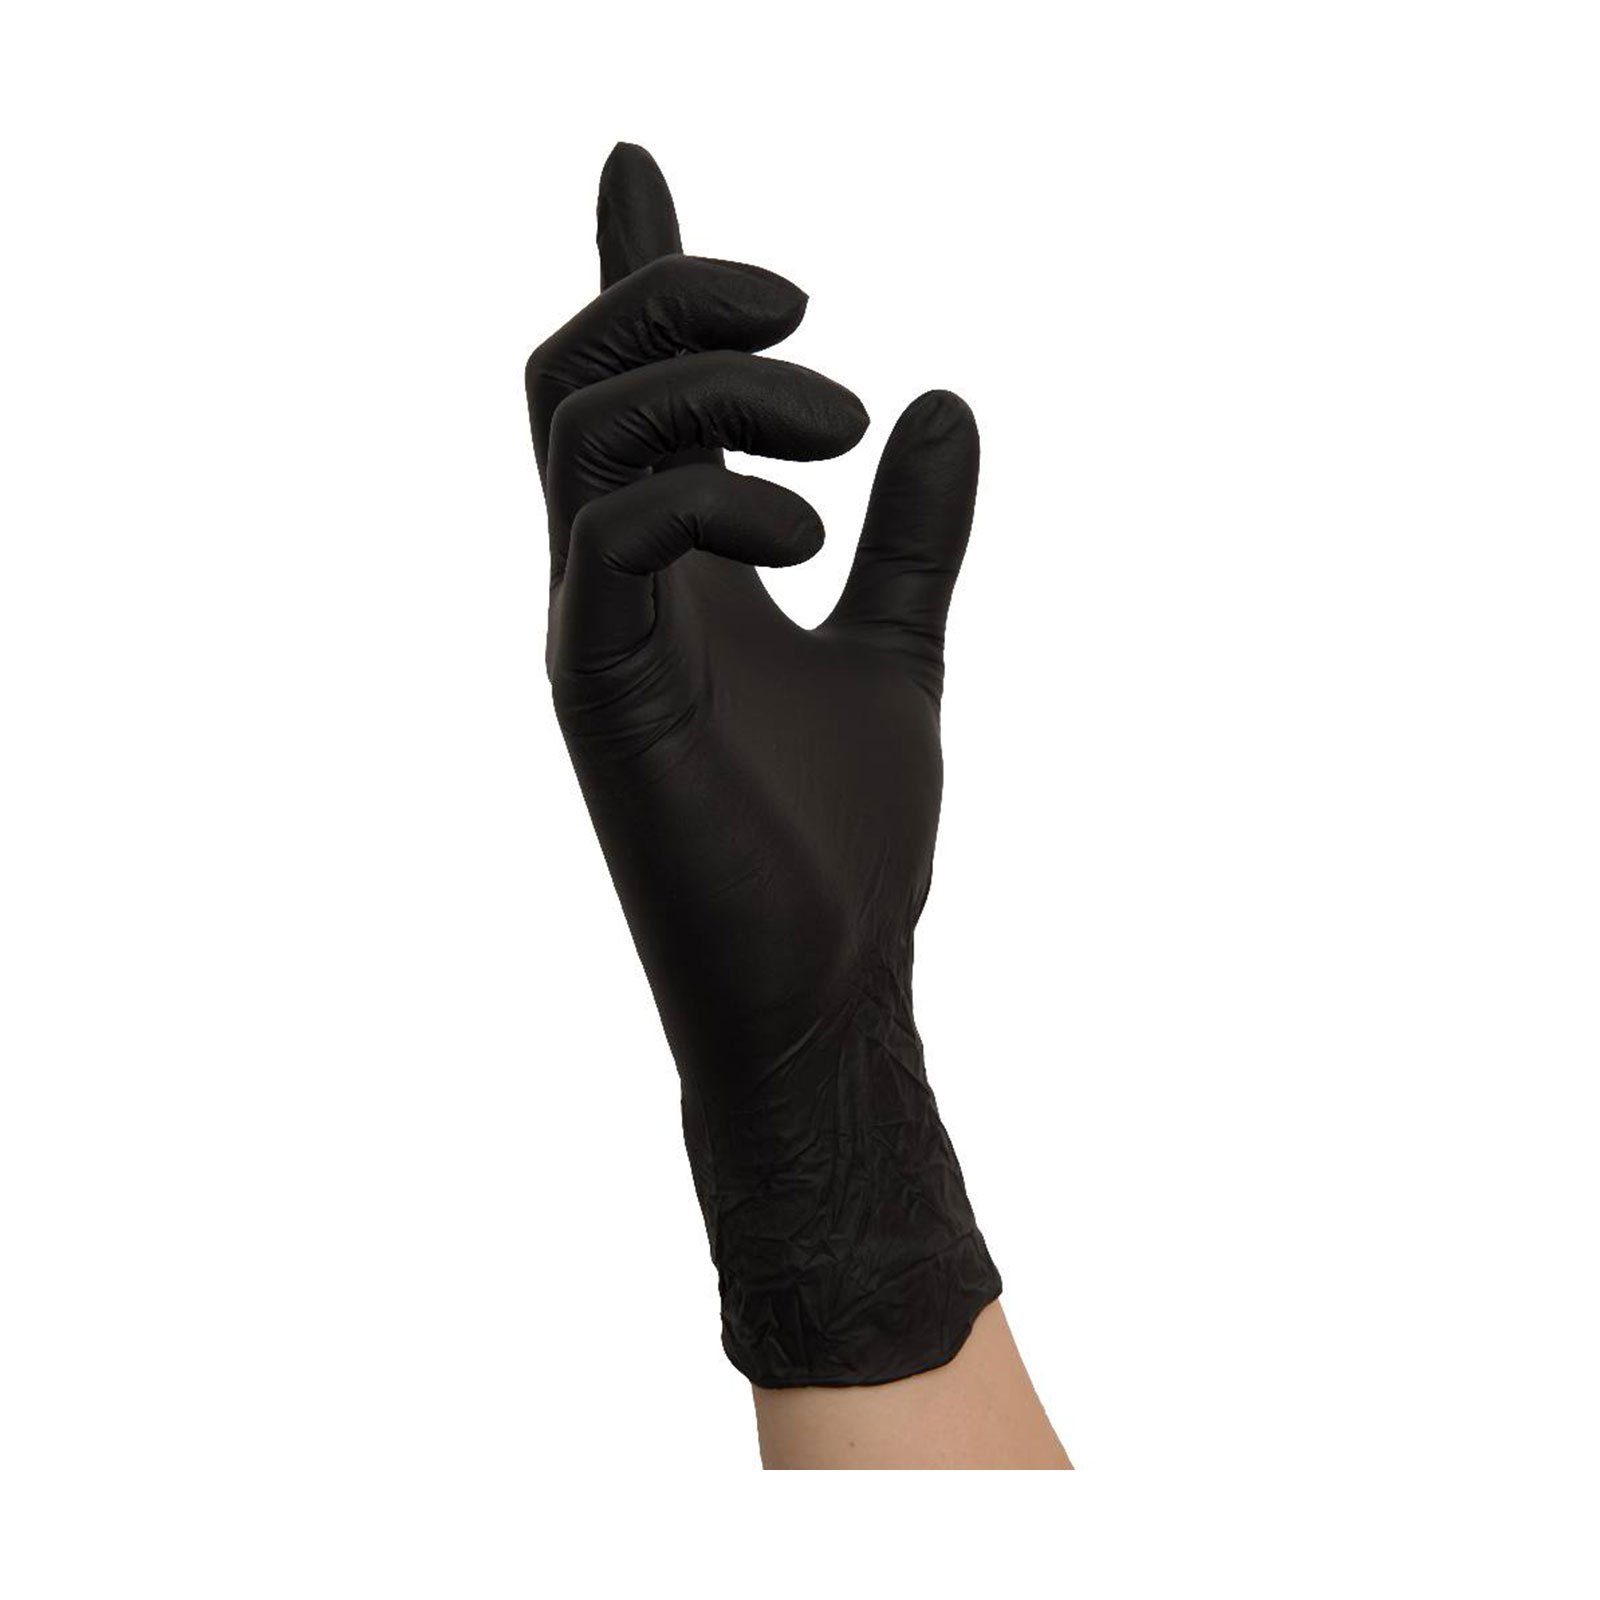 Nitras Medical Nitril-Handschuhe NITRAS Einmalhandschuhe Stück Black (Spar-Set) Wave - 8320 puderfrei 10x 100